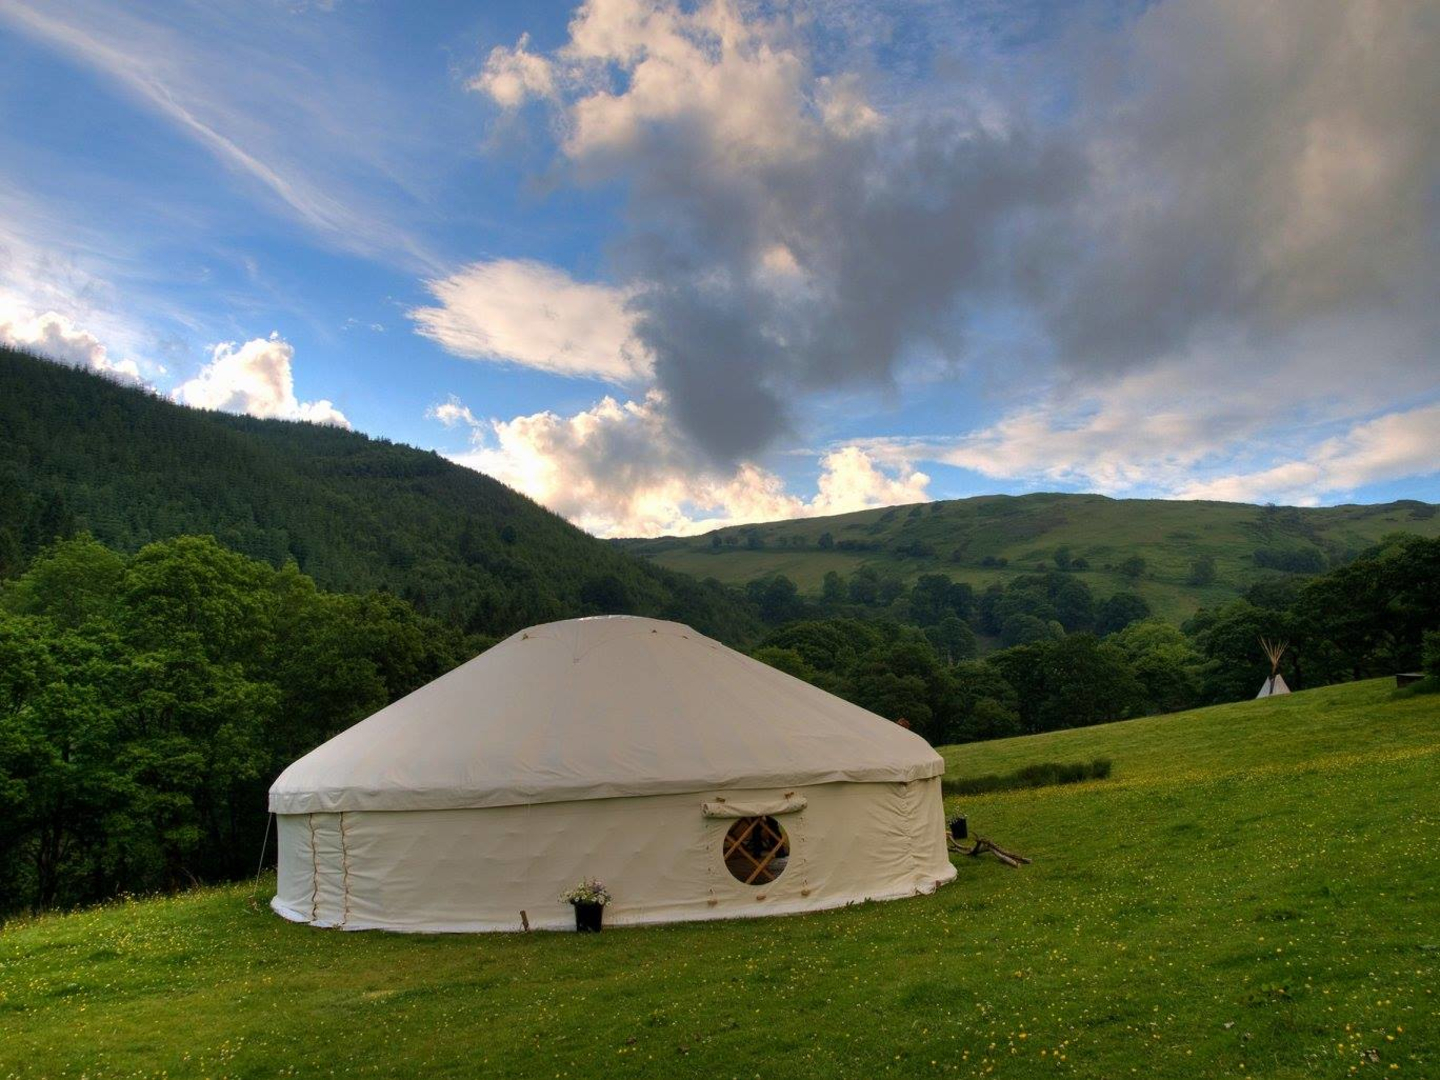 Yurt eco retreat campsite in Wales